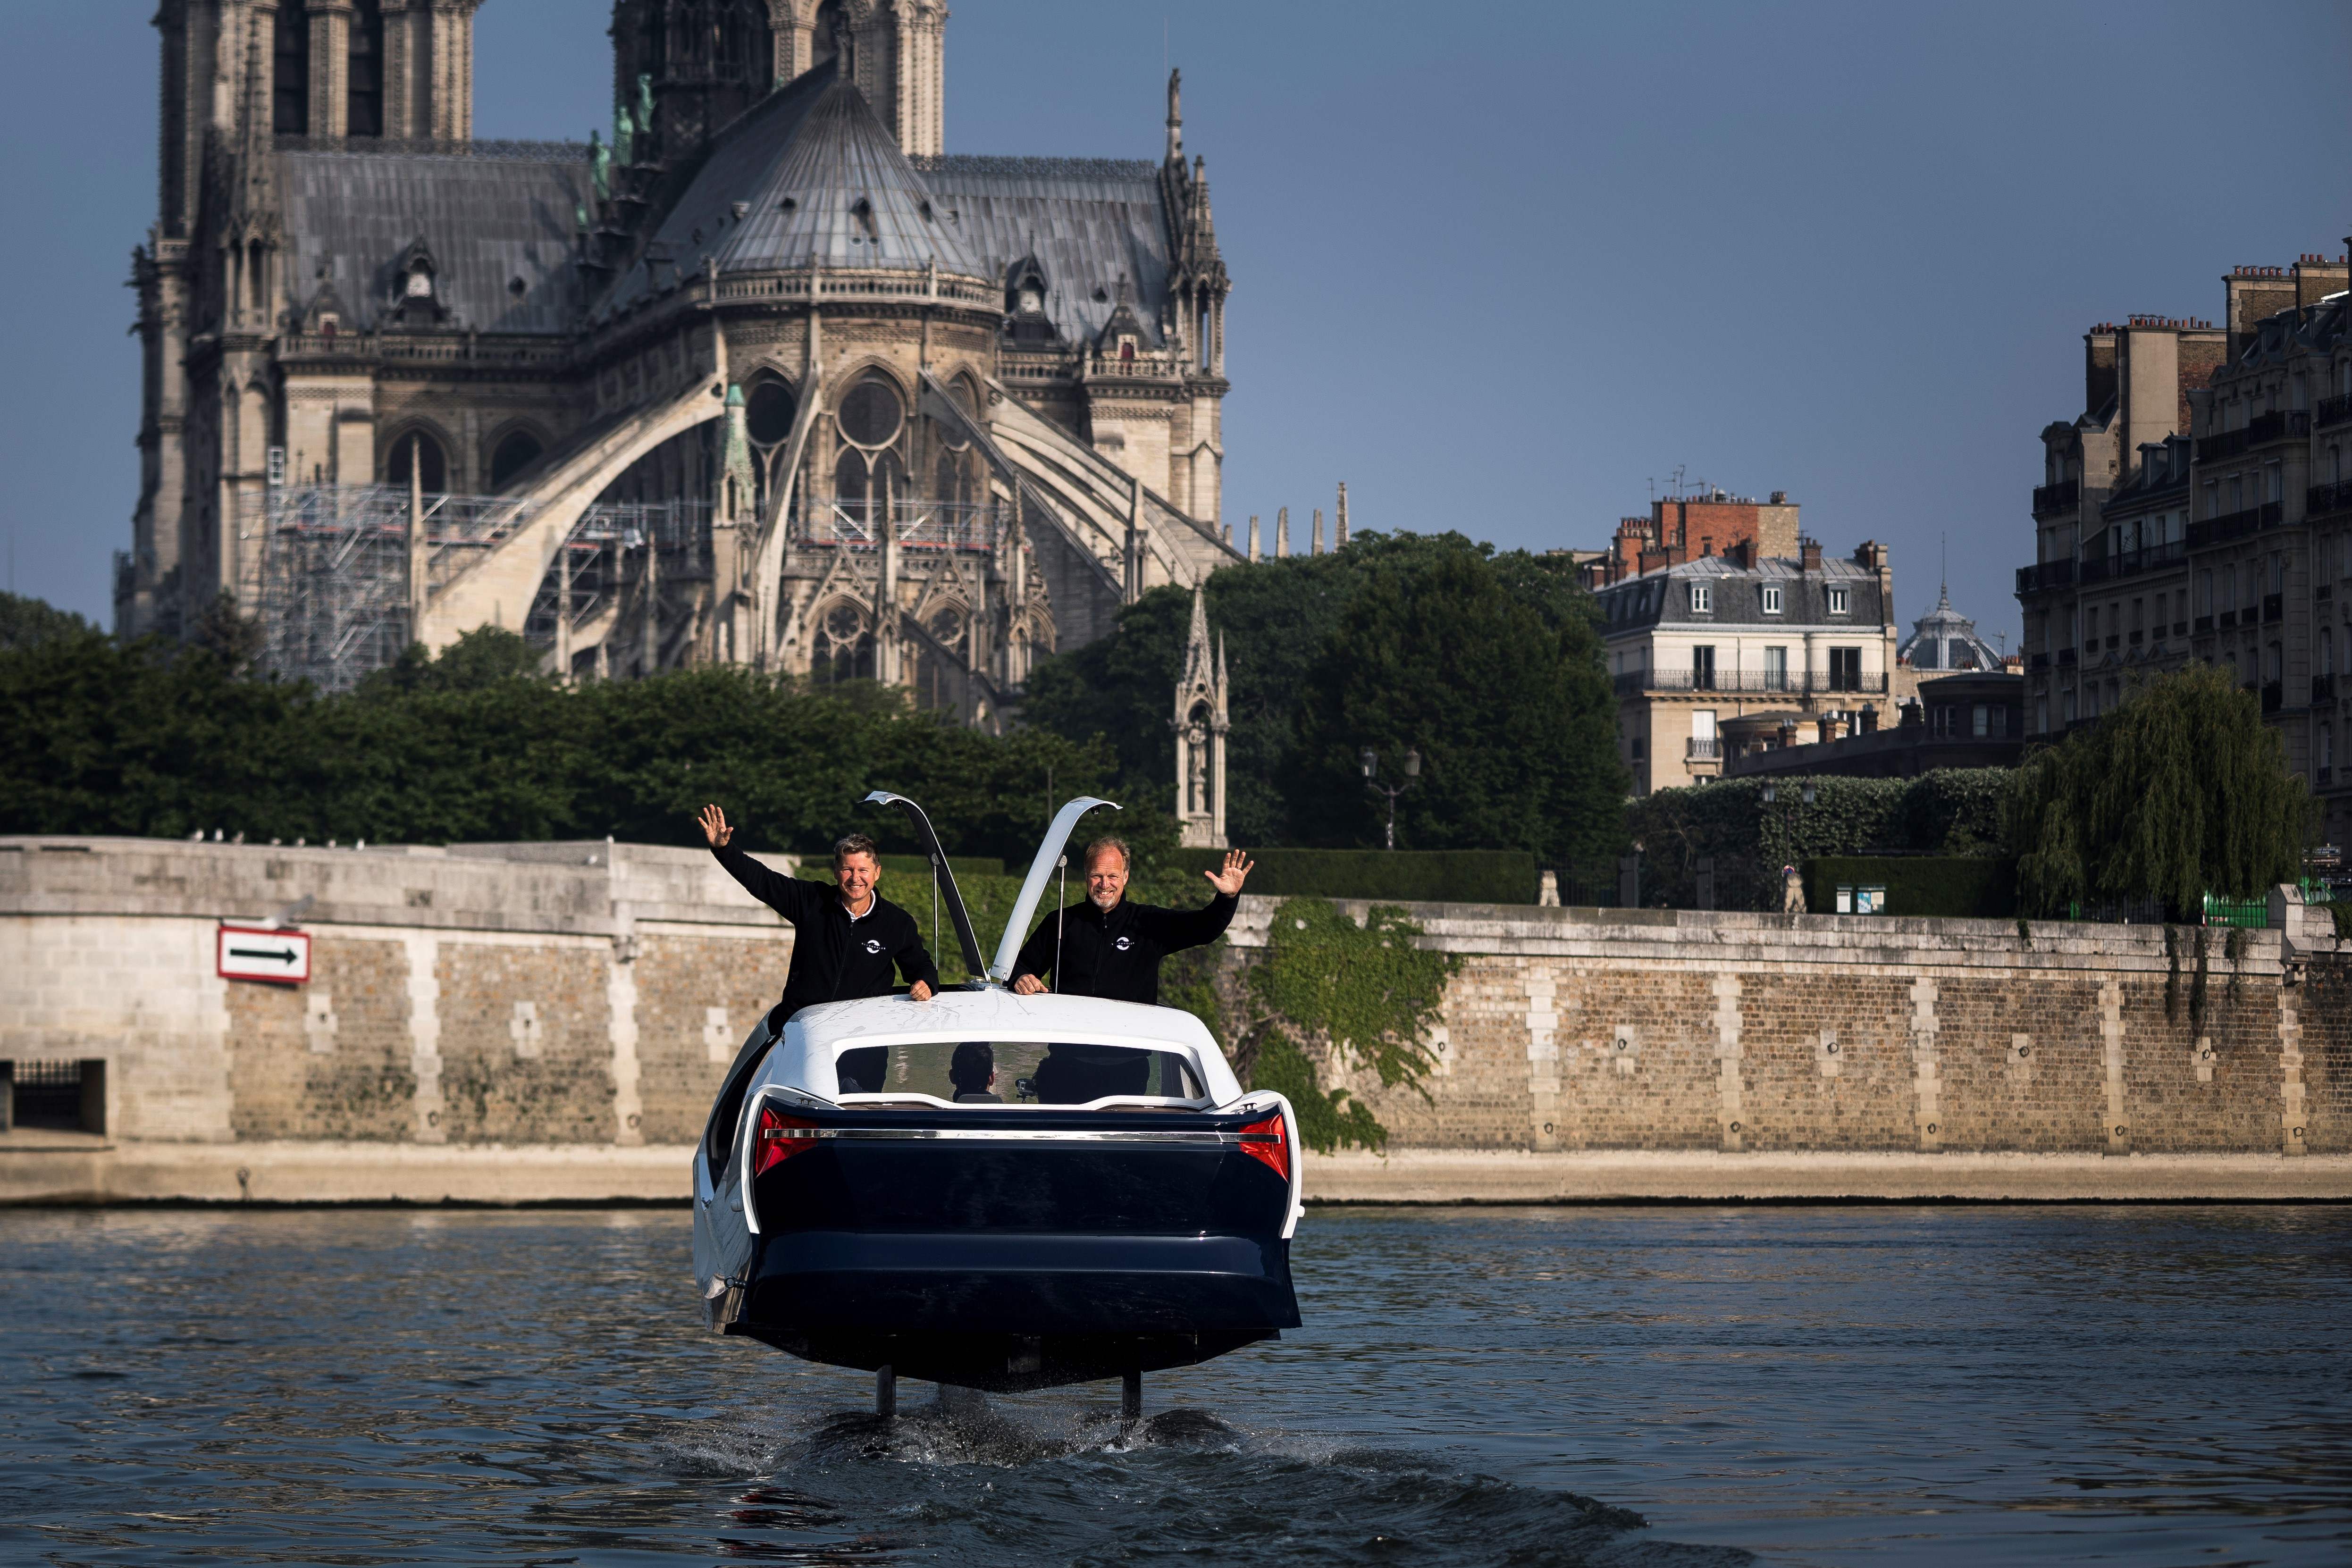 فرنسا تطلق تاكسى طائر اسمه "فقاعة البحر"